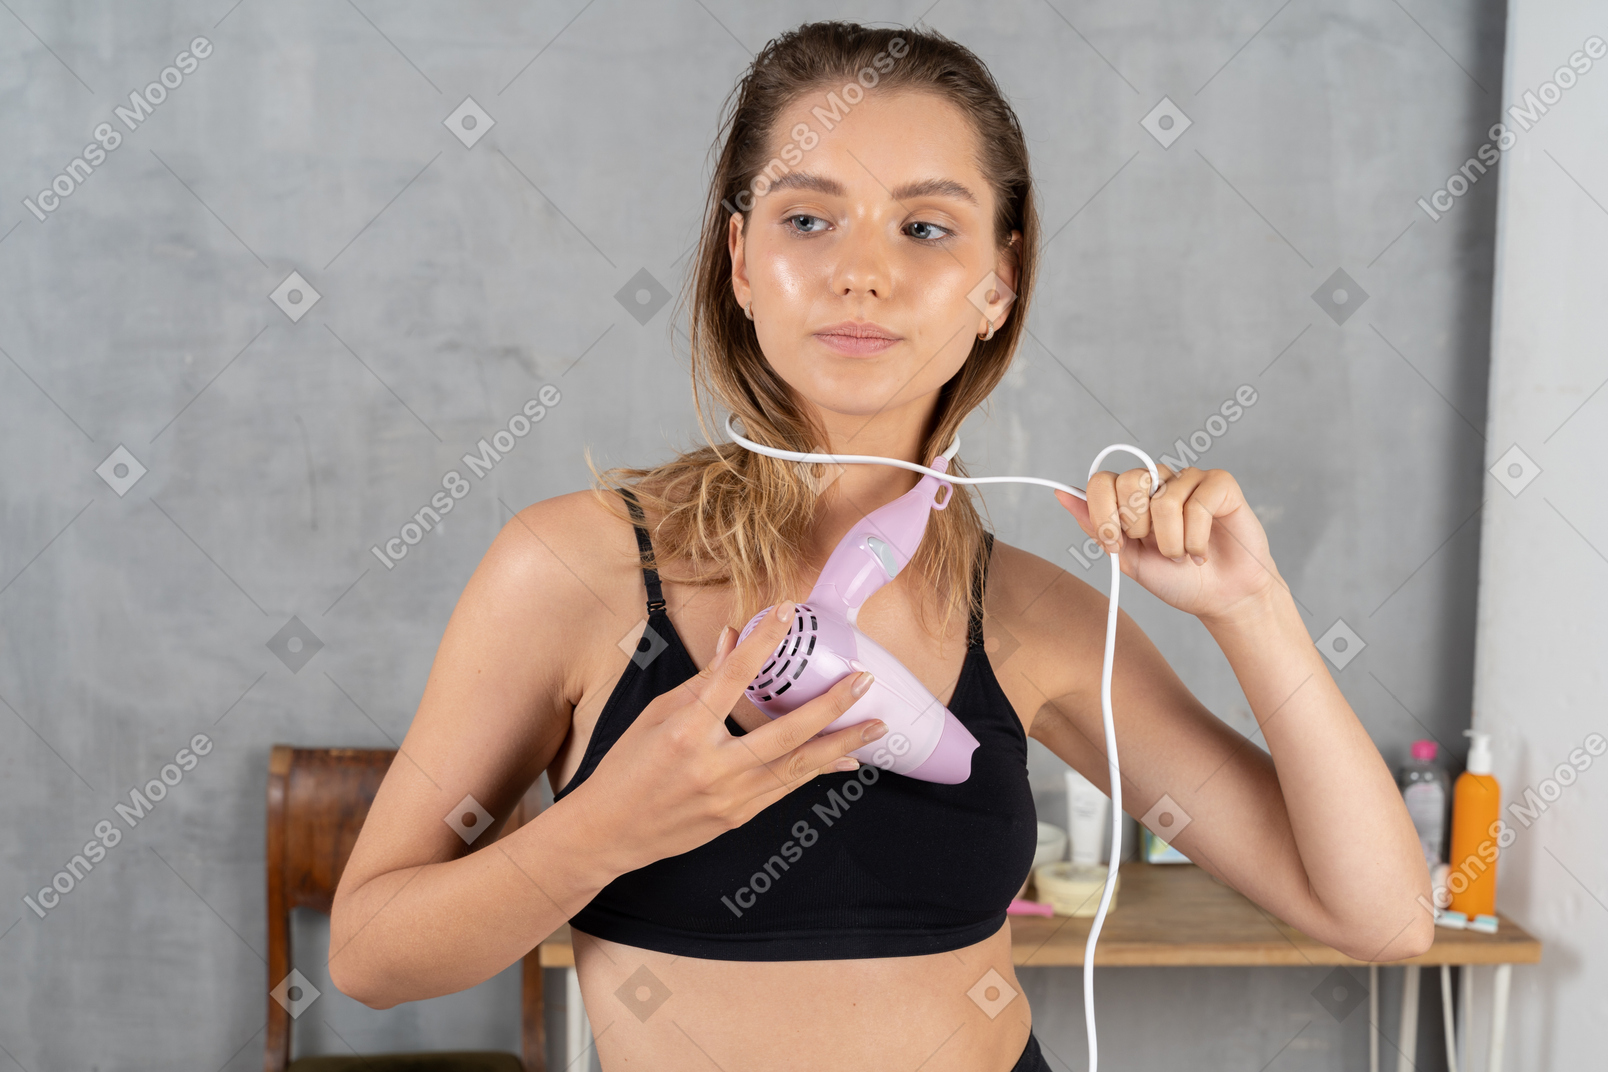 Vista frontal de una mujer joven enrollándose un cordón de secador de pelo alrededor del cuello